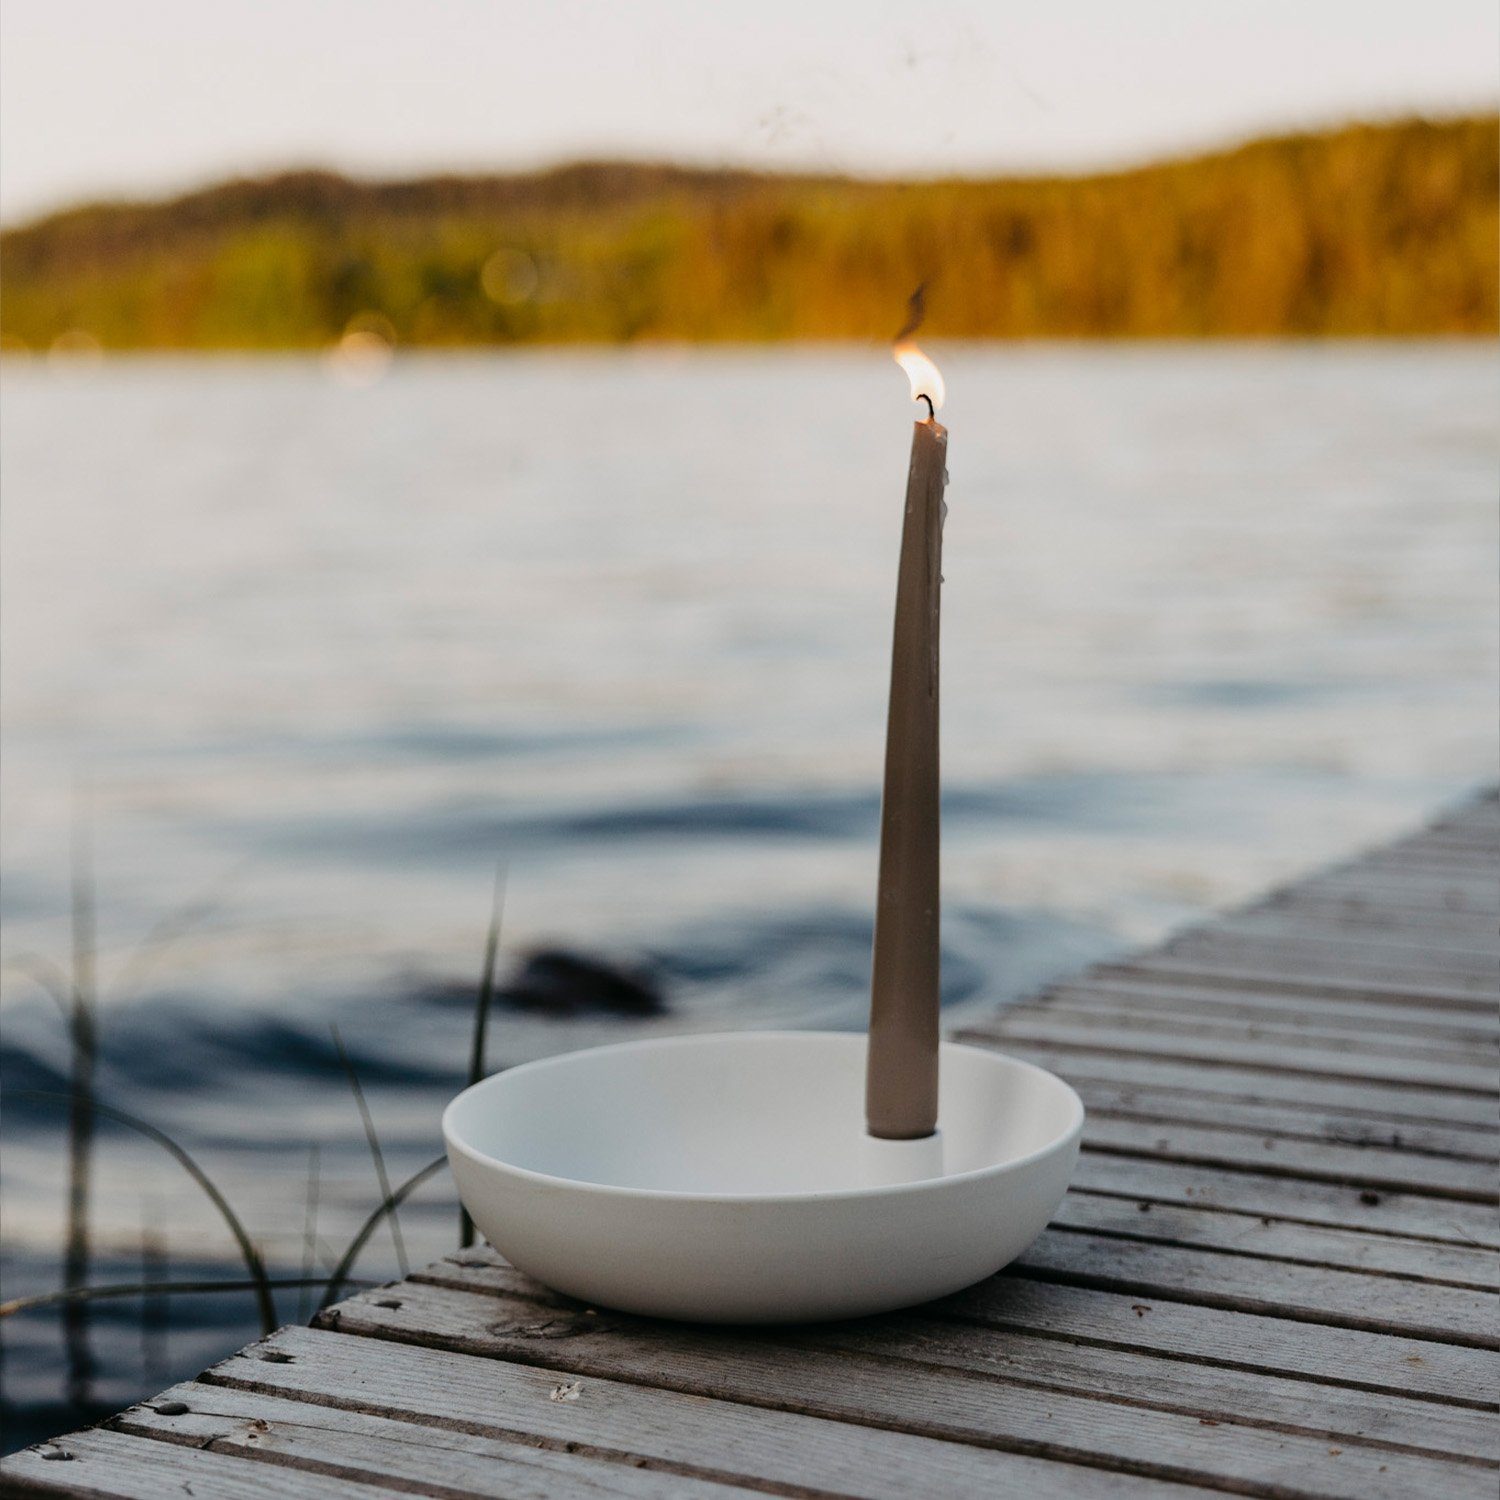 Storefactory Scandinavia Kerzenhalter Lidatorp XL Kerzenhalter, weiß,  Keramik, BxH 26 x 7 cm (1 St), Handgefertigt, daher ein Unikat, Mit  Ablagefläche für Kleinteile wie weitere Dekoration, Schlüssel oder ähnlichem